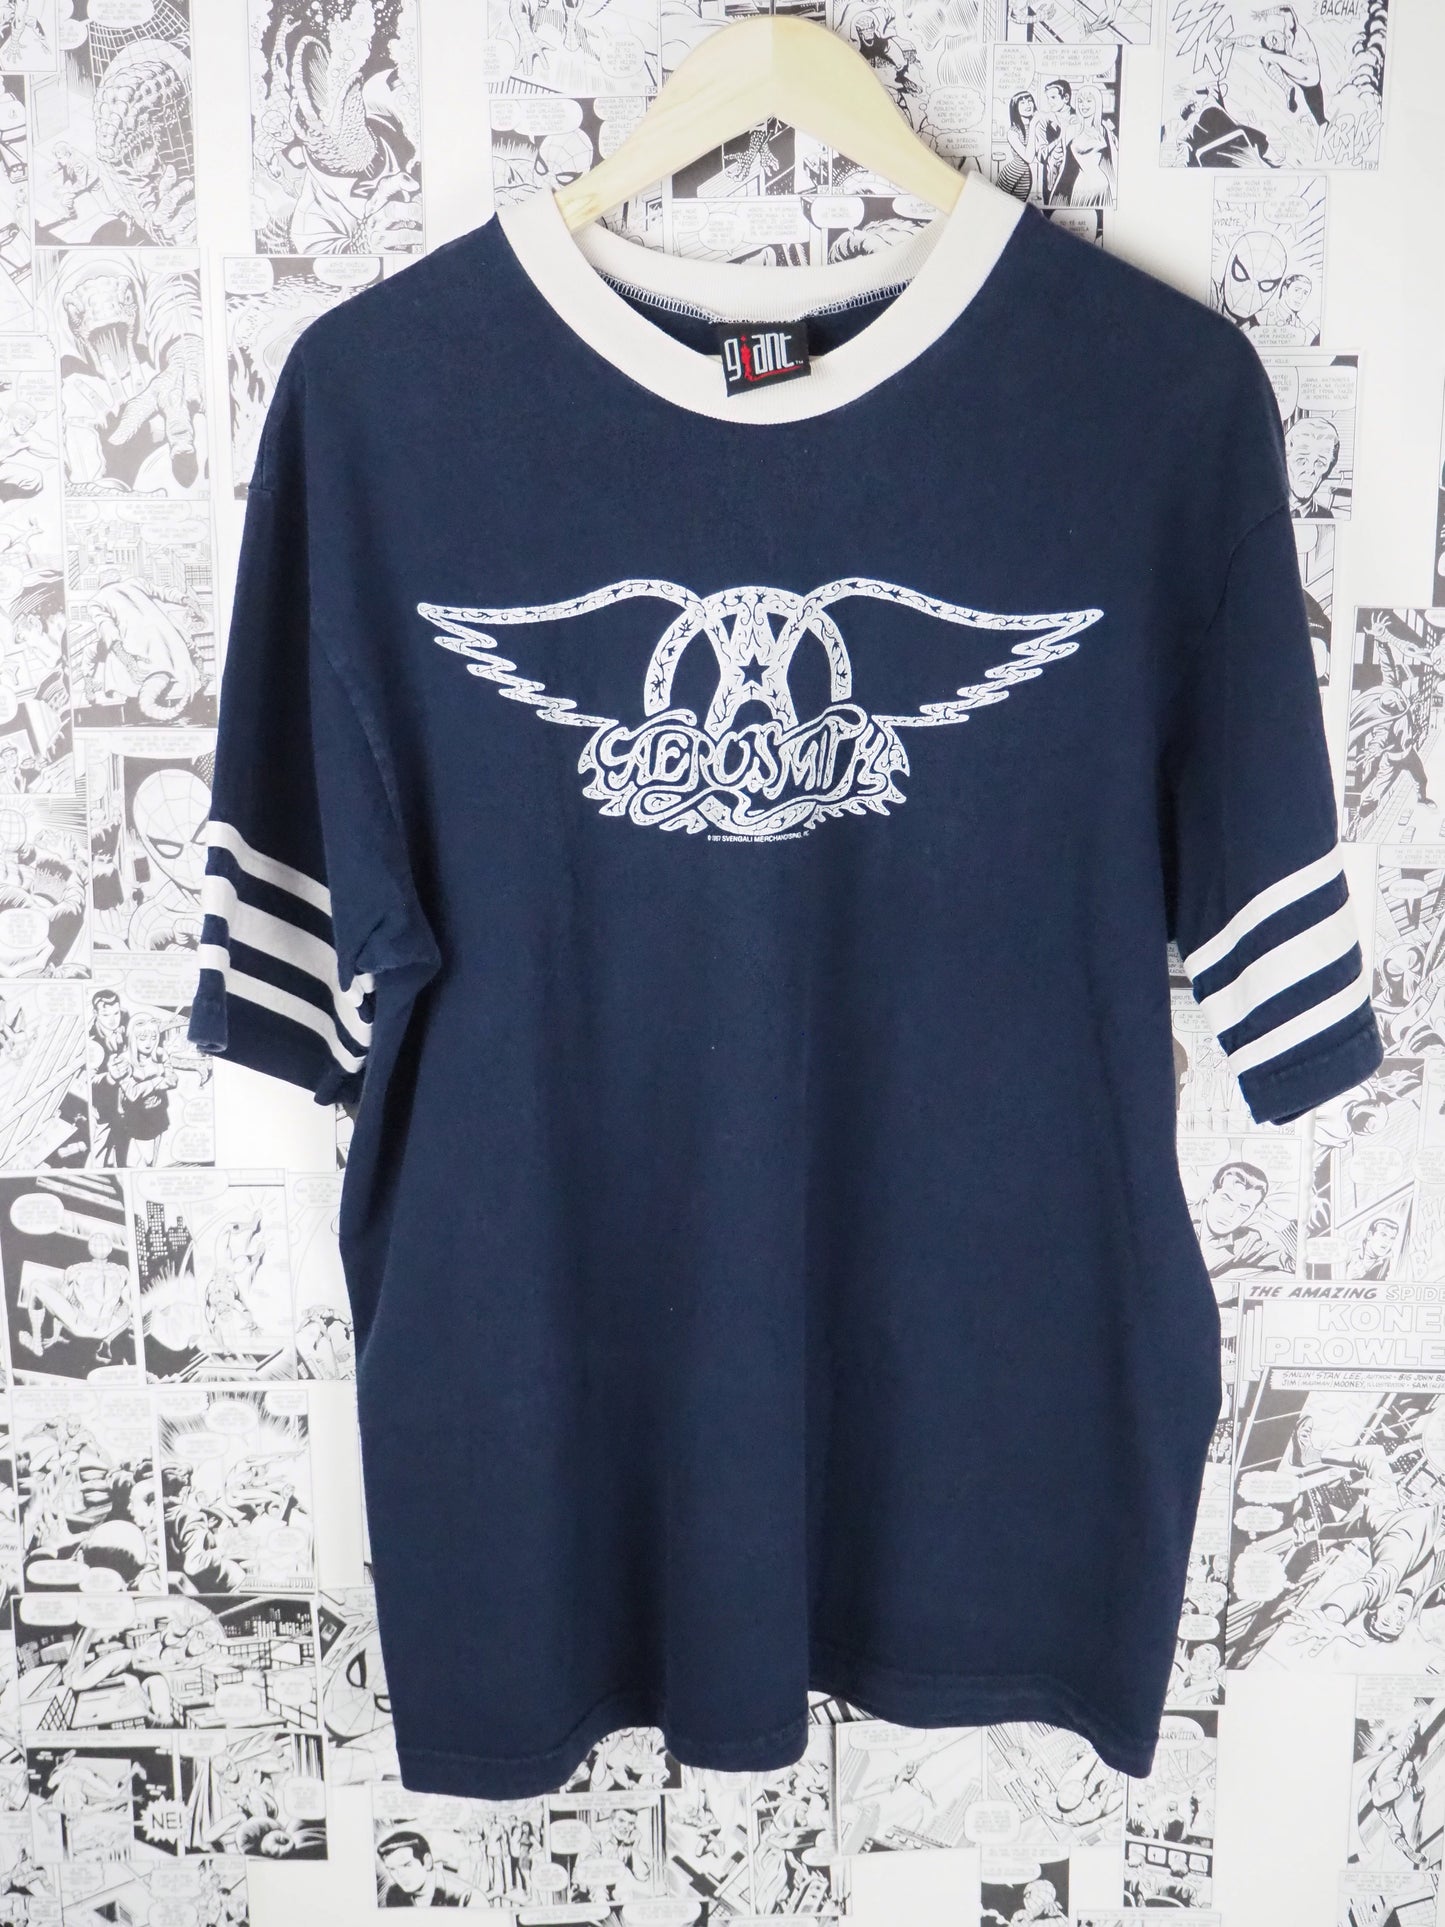 Vintage Aerosmith 1997 t-shirt - size XL